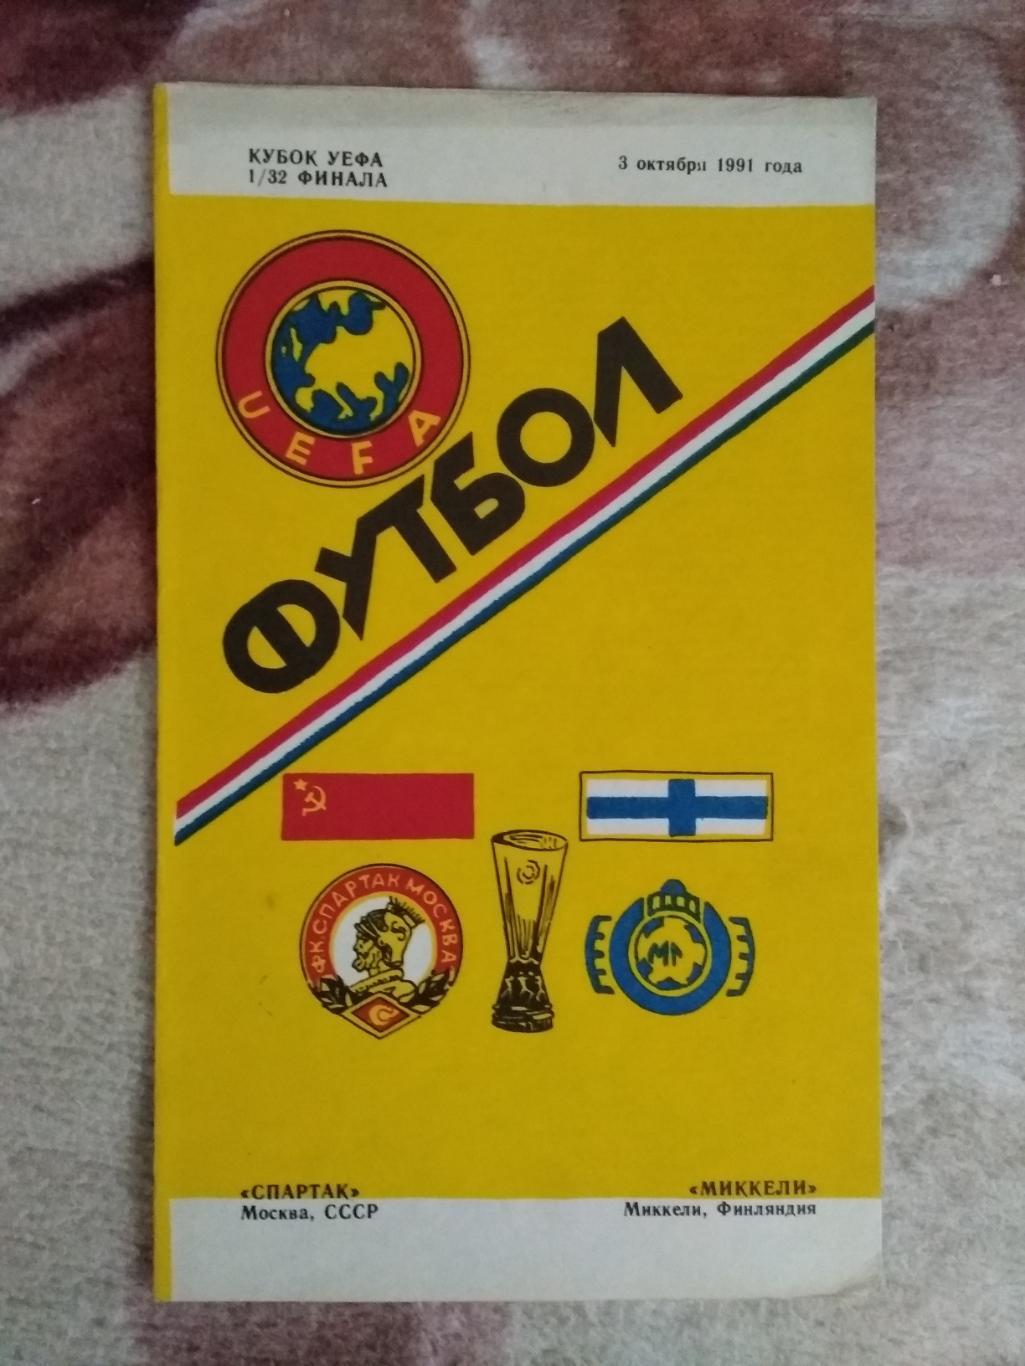 ЕК.Спартак (Москва,СССР) - Миккели (Финляндия).К УЕФА 1/32 03.10.1991.(Душанбе).